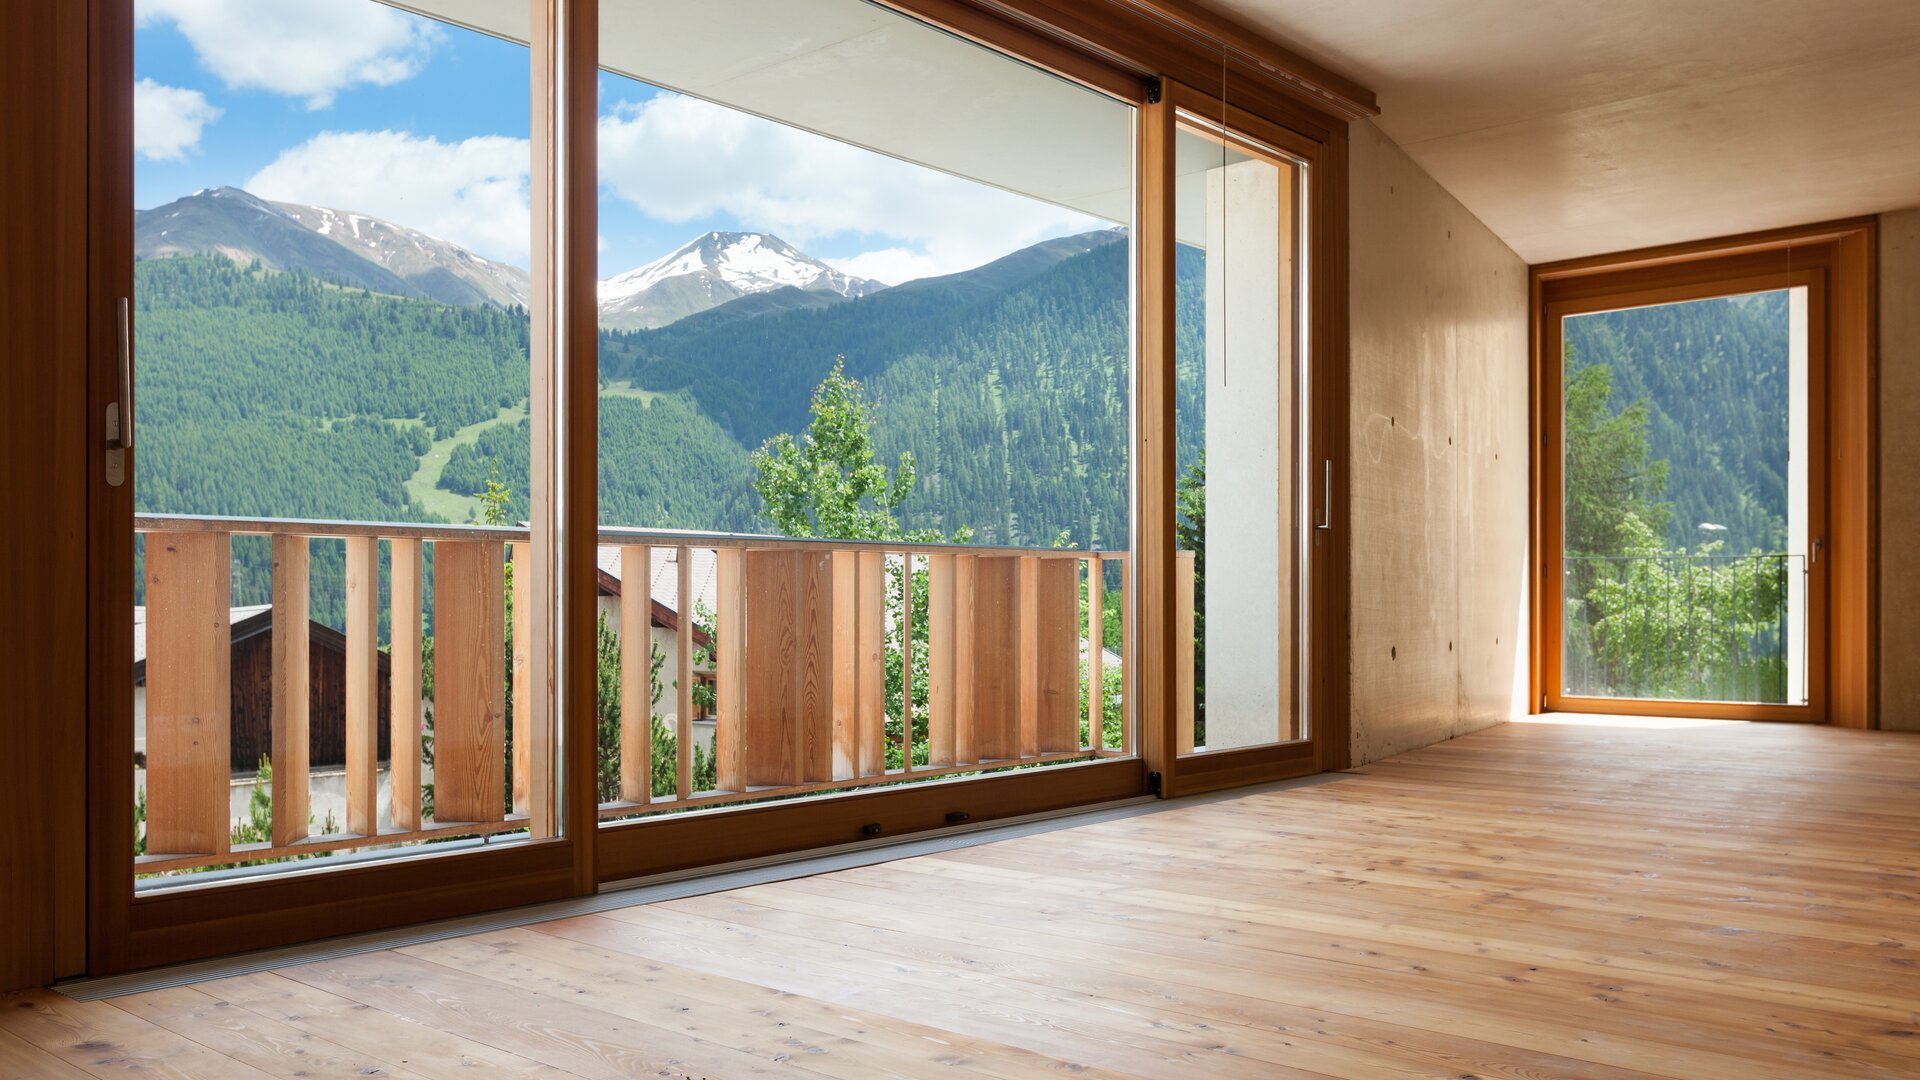 Moderne spaarzaam ingerichte kamer in lichte houtlook met grote houten ramen en uitzicht op de natuur.